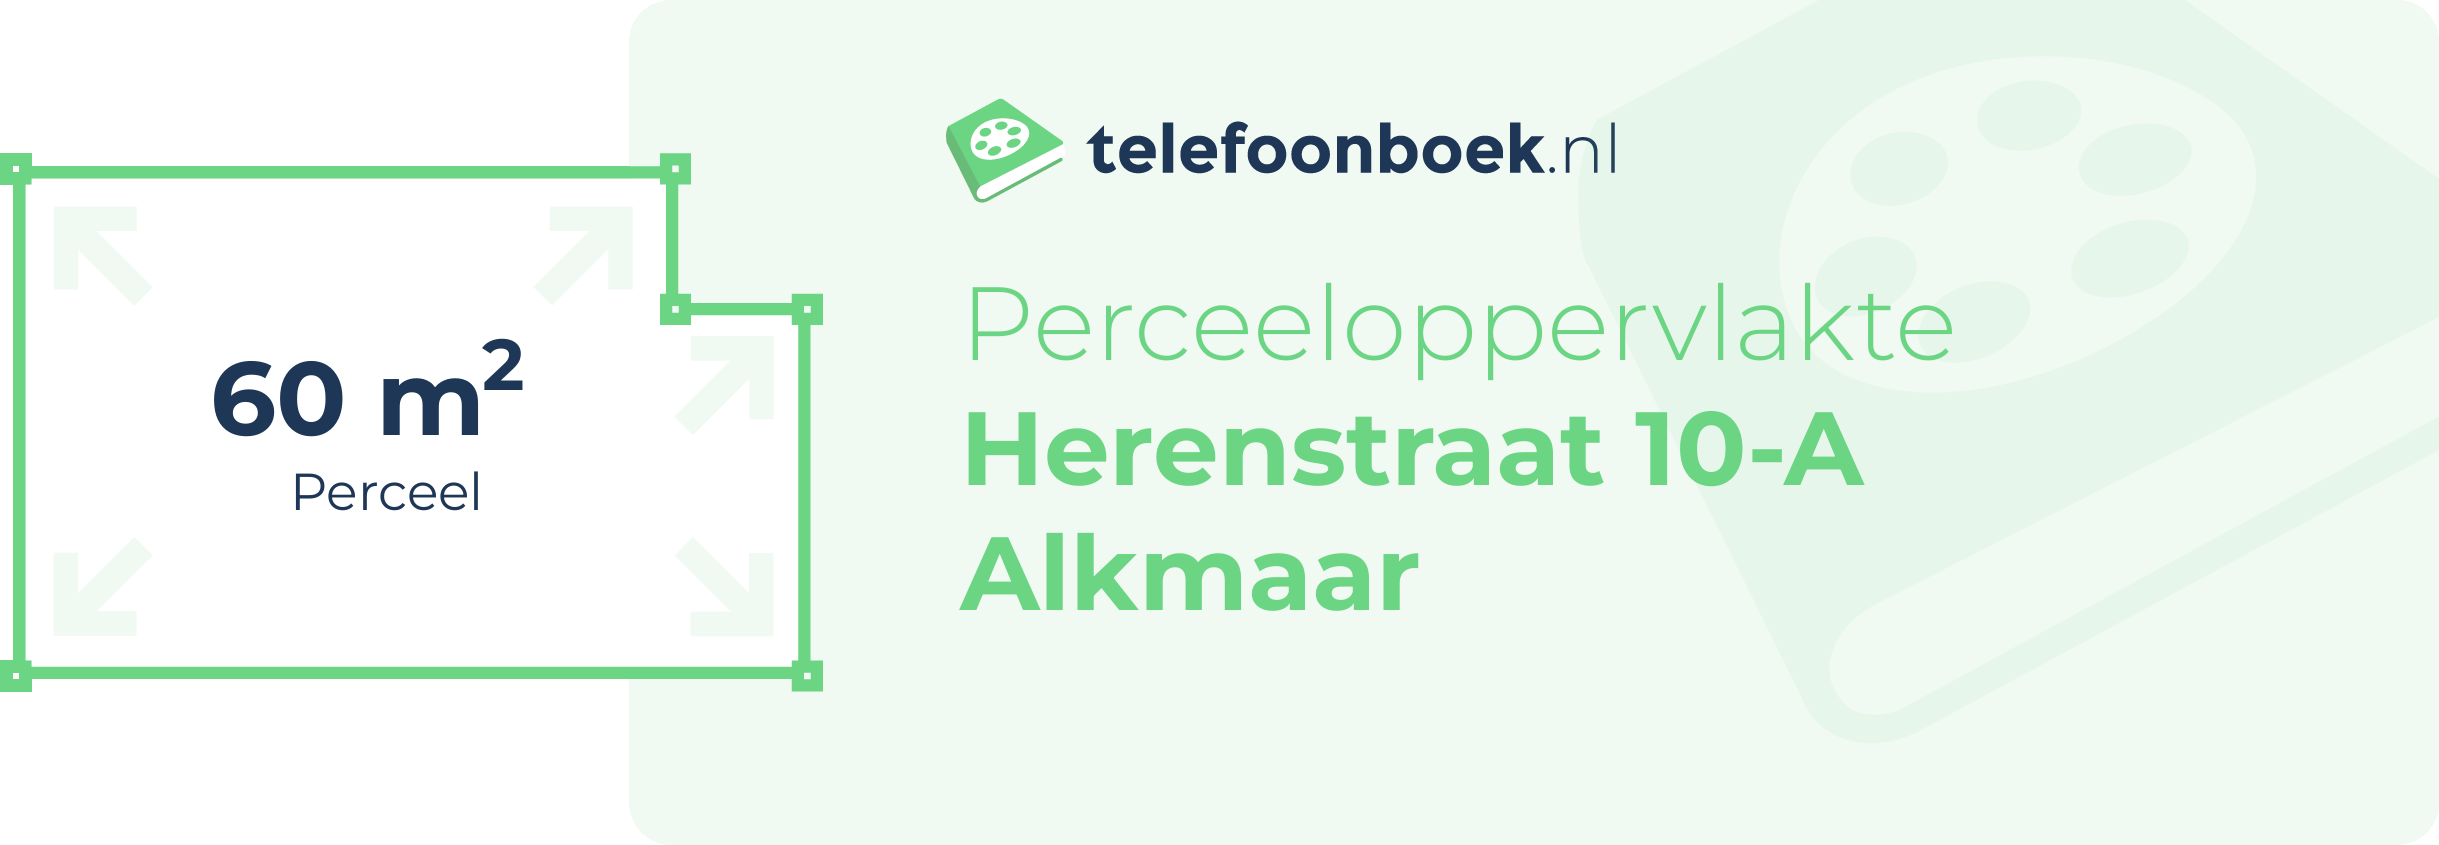 Perceeloppervlakte Herenstraat 10-A Alkmaar